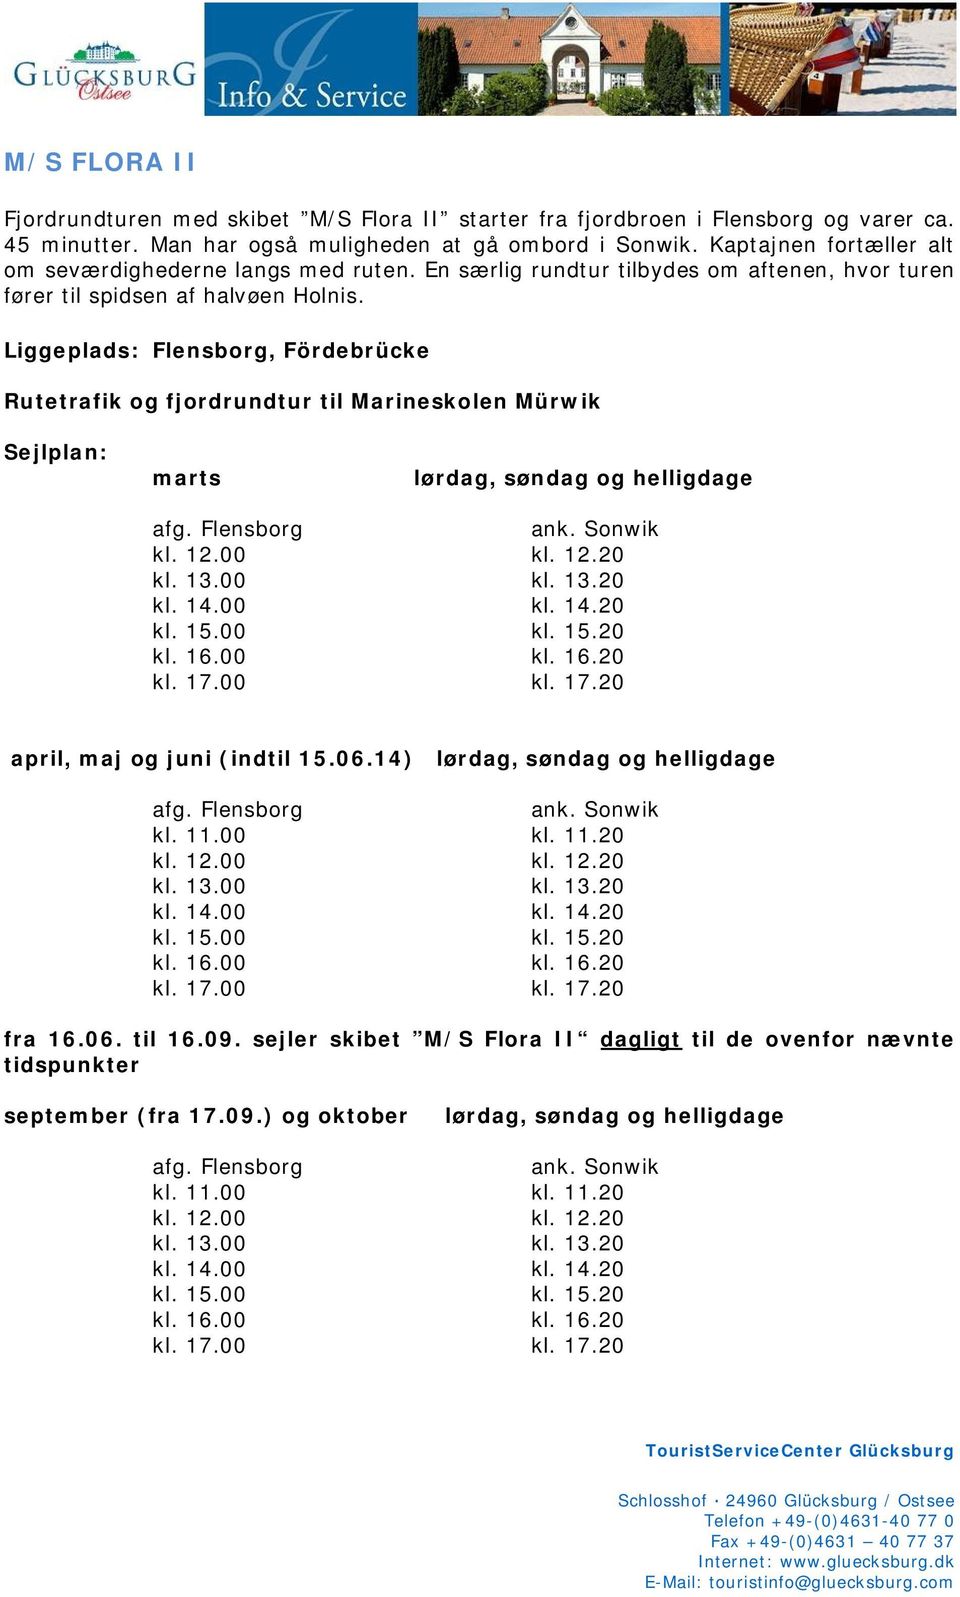 Liggeplads: Flensborg, Fördebrücke Rutetrafik og fjordrundtur til Marineskolen Mürwik Sejlplan: marts lørdag, søndag og helligdage afg. Flensborg ank. Sonwik kl. 12.00 kl. 12.20 kl. 13.00 kl. 13.20 kl. 14.